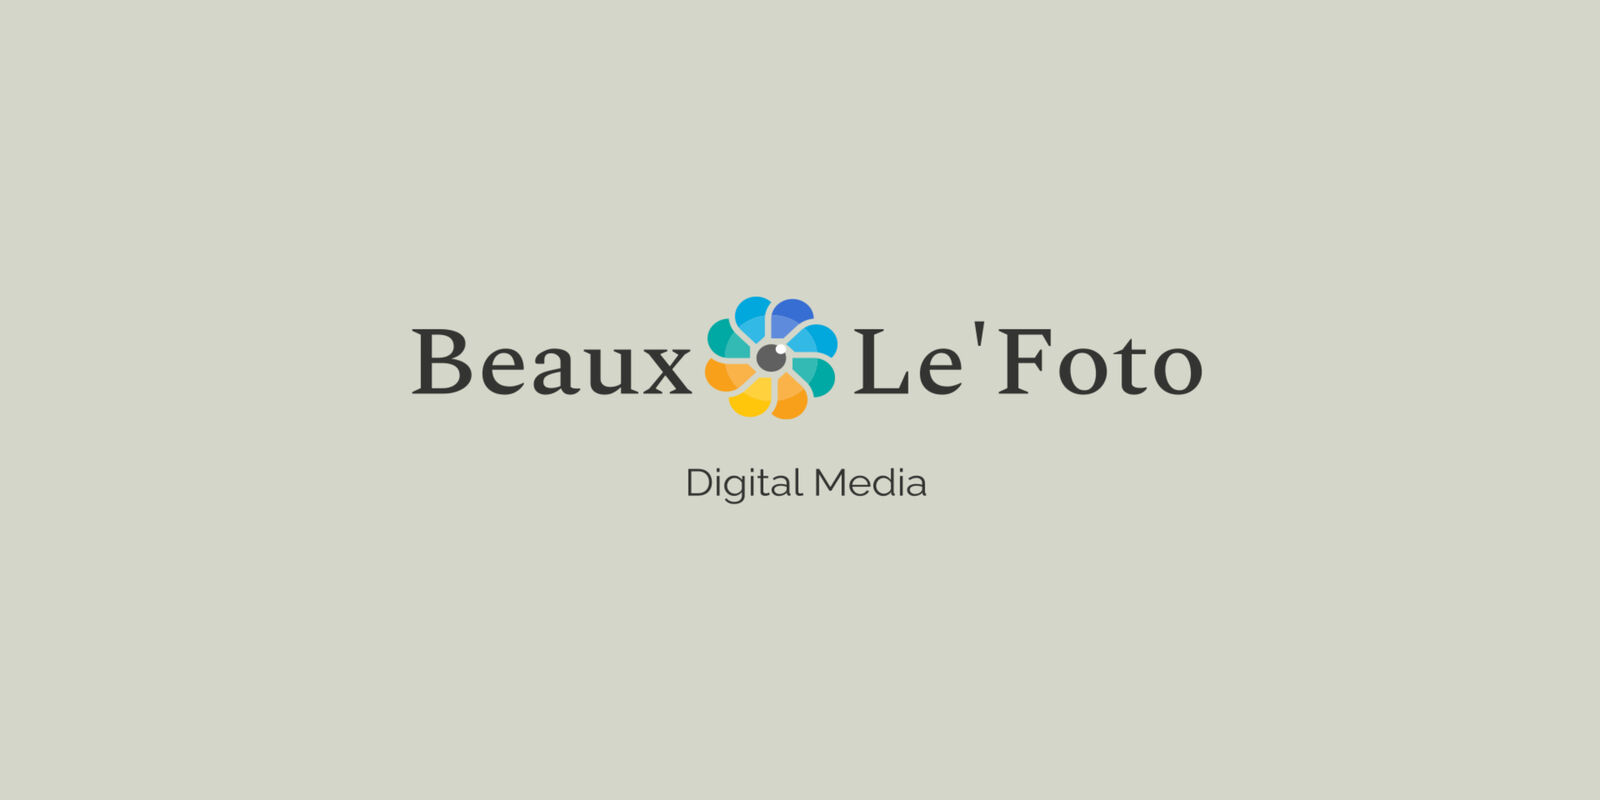 See Beaux Le'Foto profile